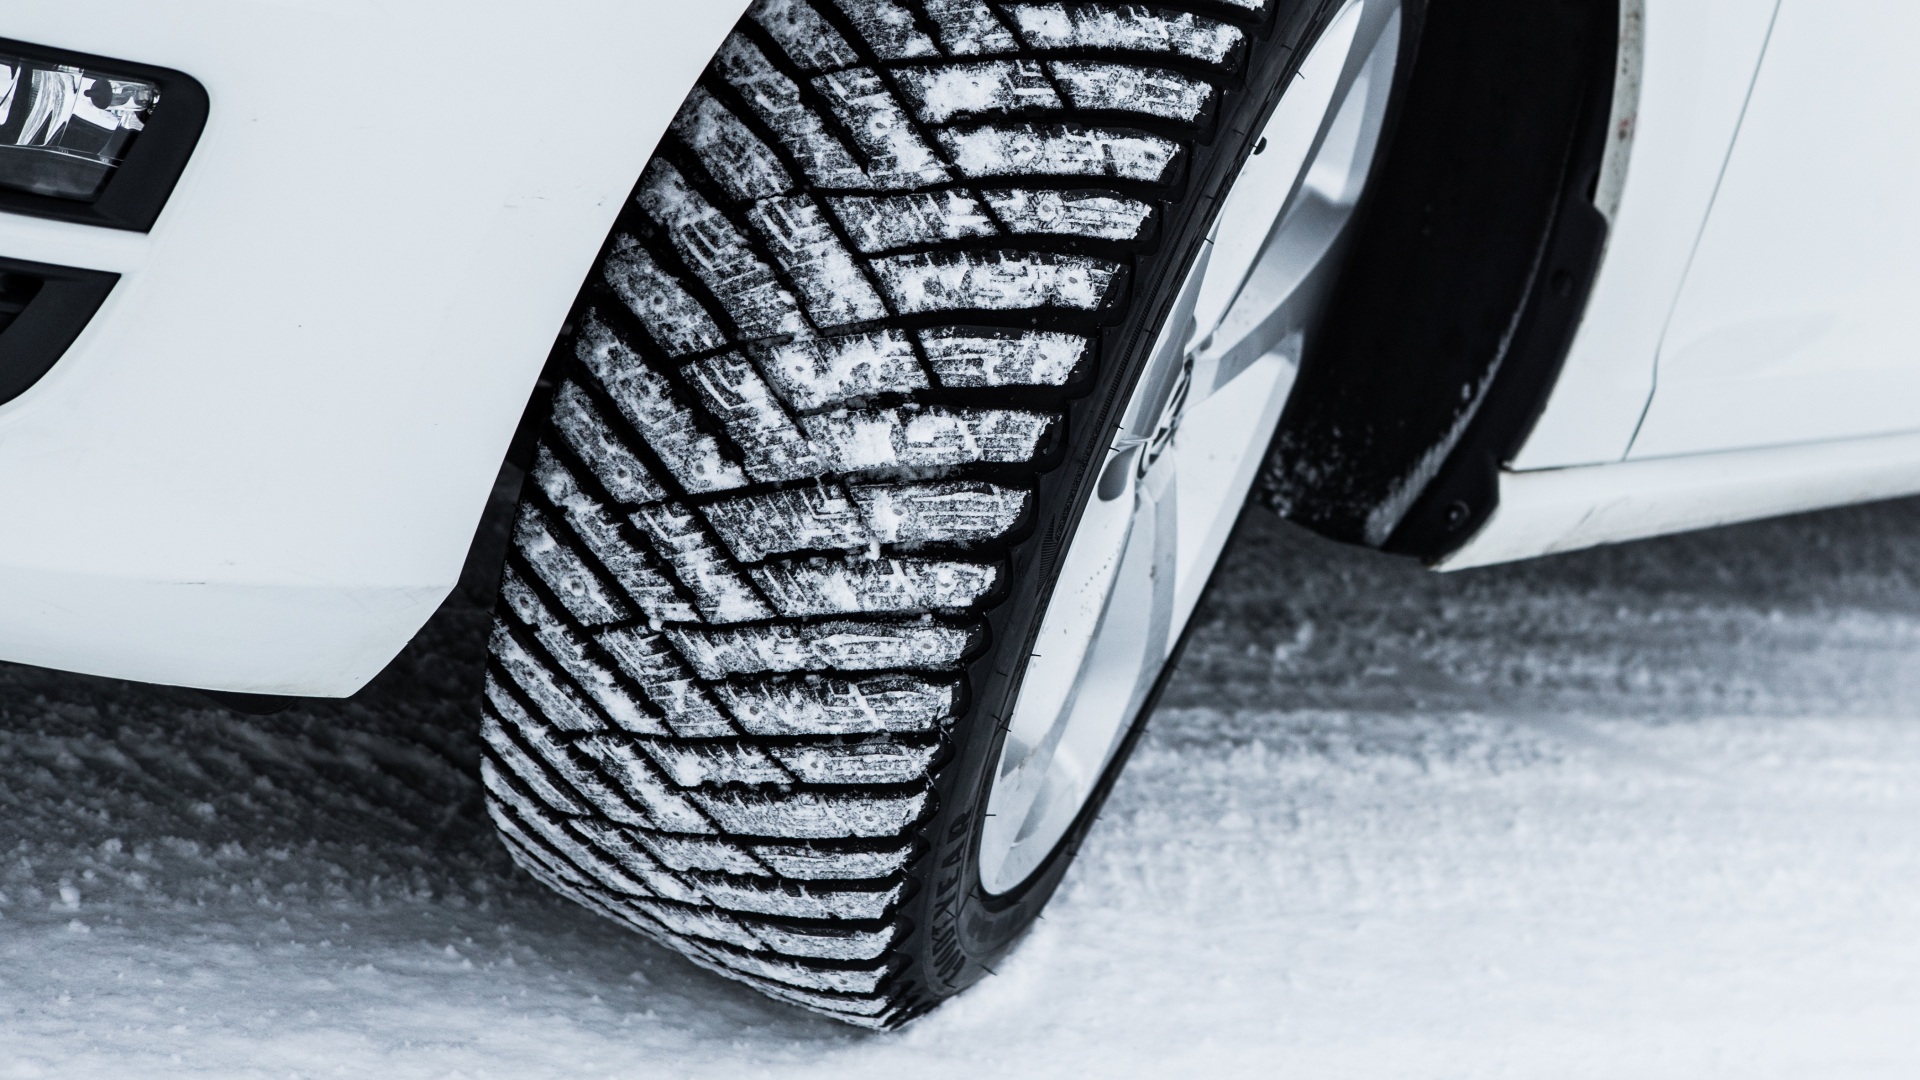 Zimní pneumatiky jsou po roce opět povinné! Co všechno potřebujete vědět?